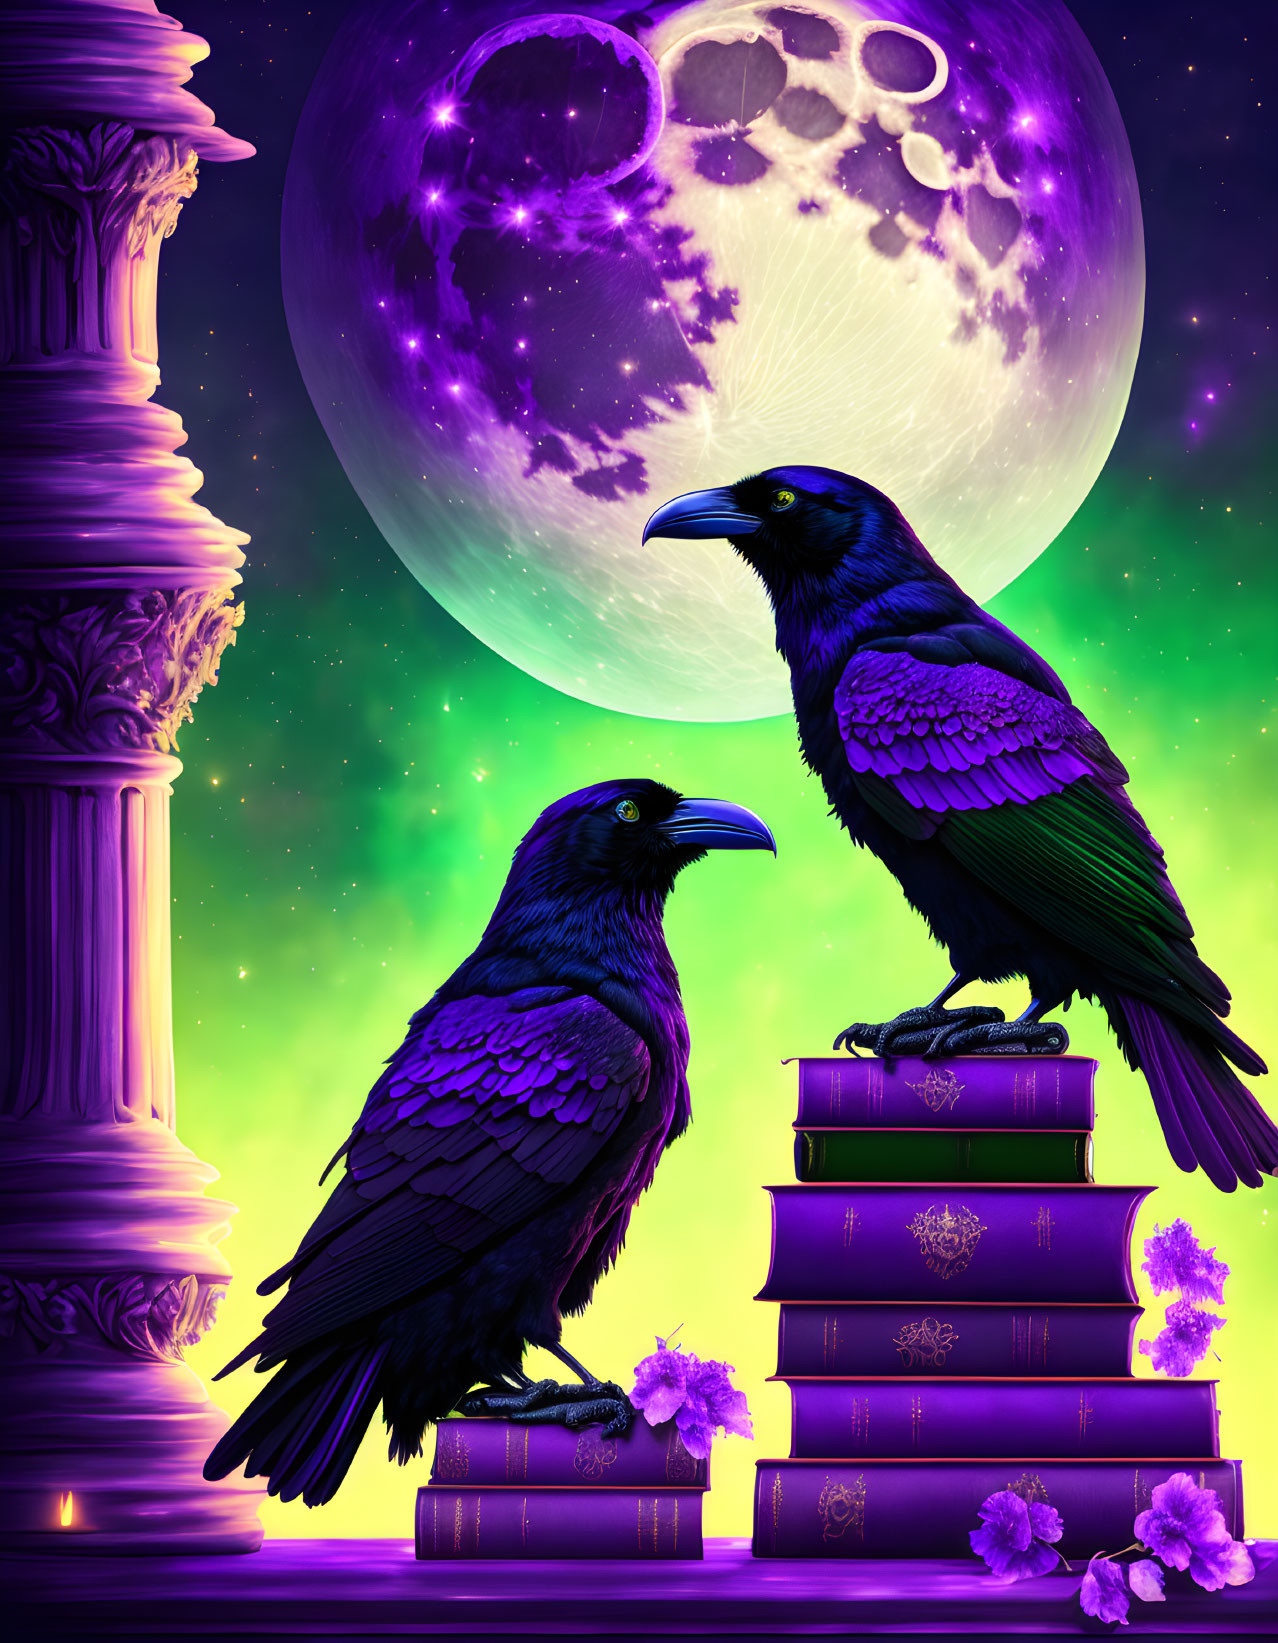 Ravens at Night